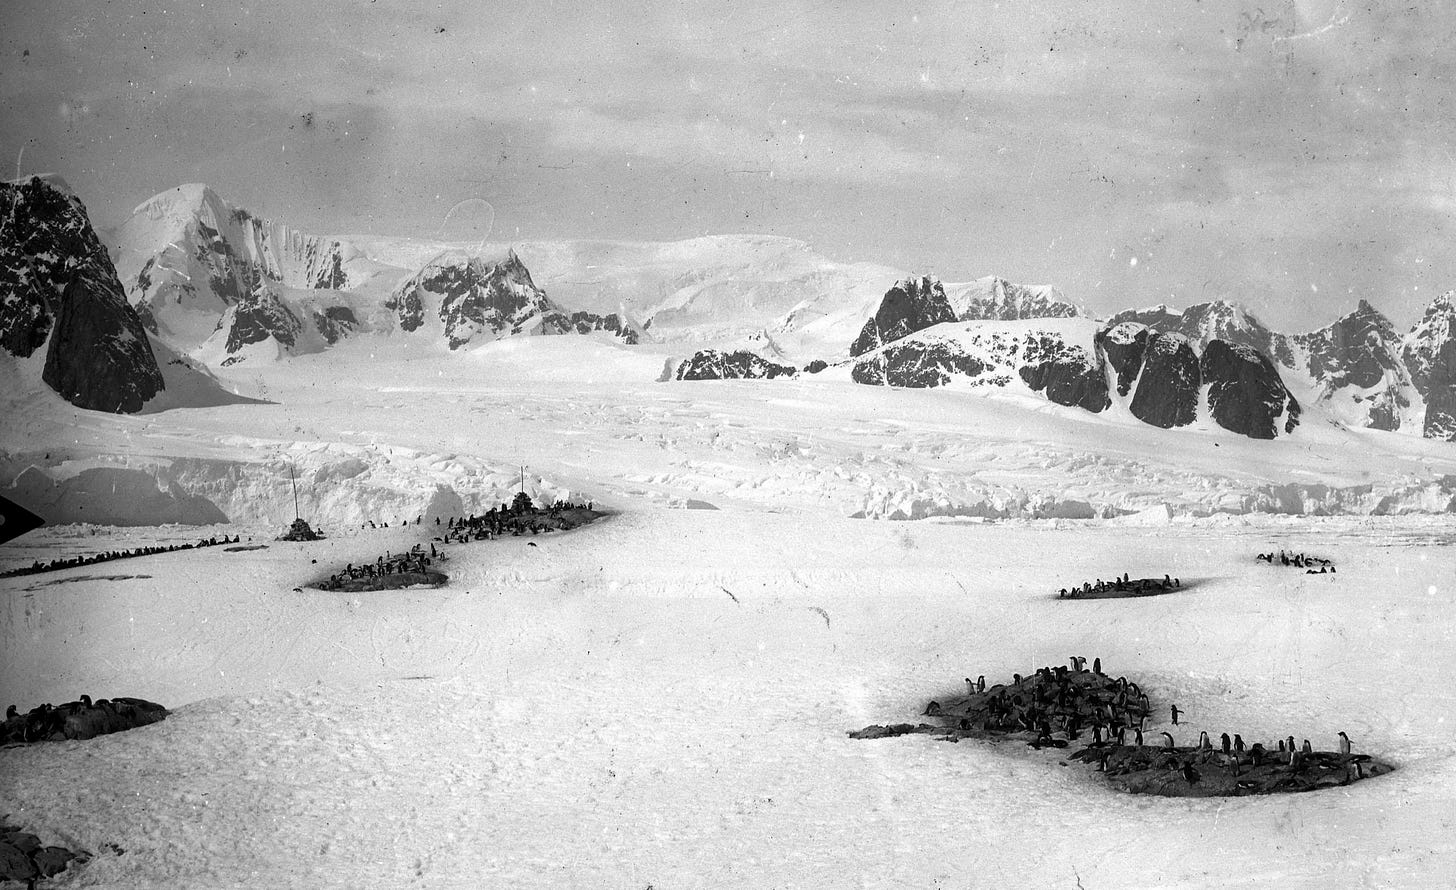 Albert Senouque, Petites rookeries éparses sur l'le Petermann, ca. 1909, photograph taken during the Pourquoi Pas? traval in Antarctic in 1909, © MédiHAL [link] https://medihal.archives-ouvertes.fr/medihal-00708114